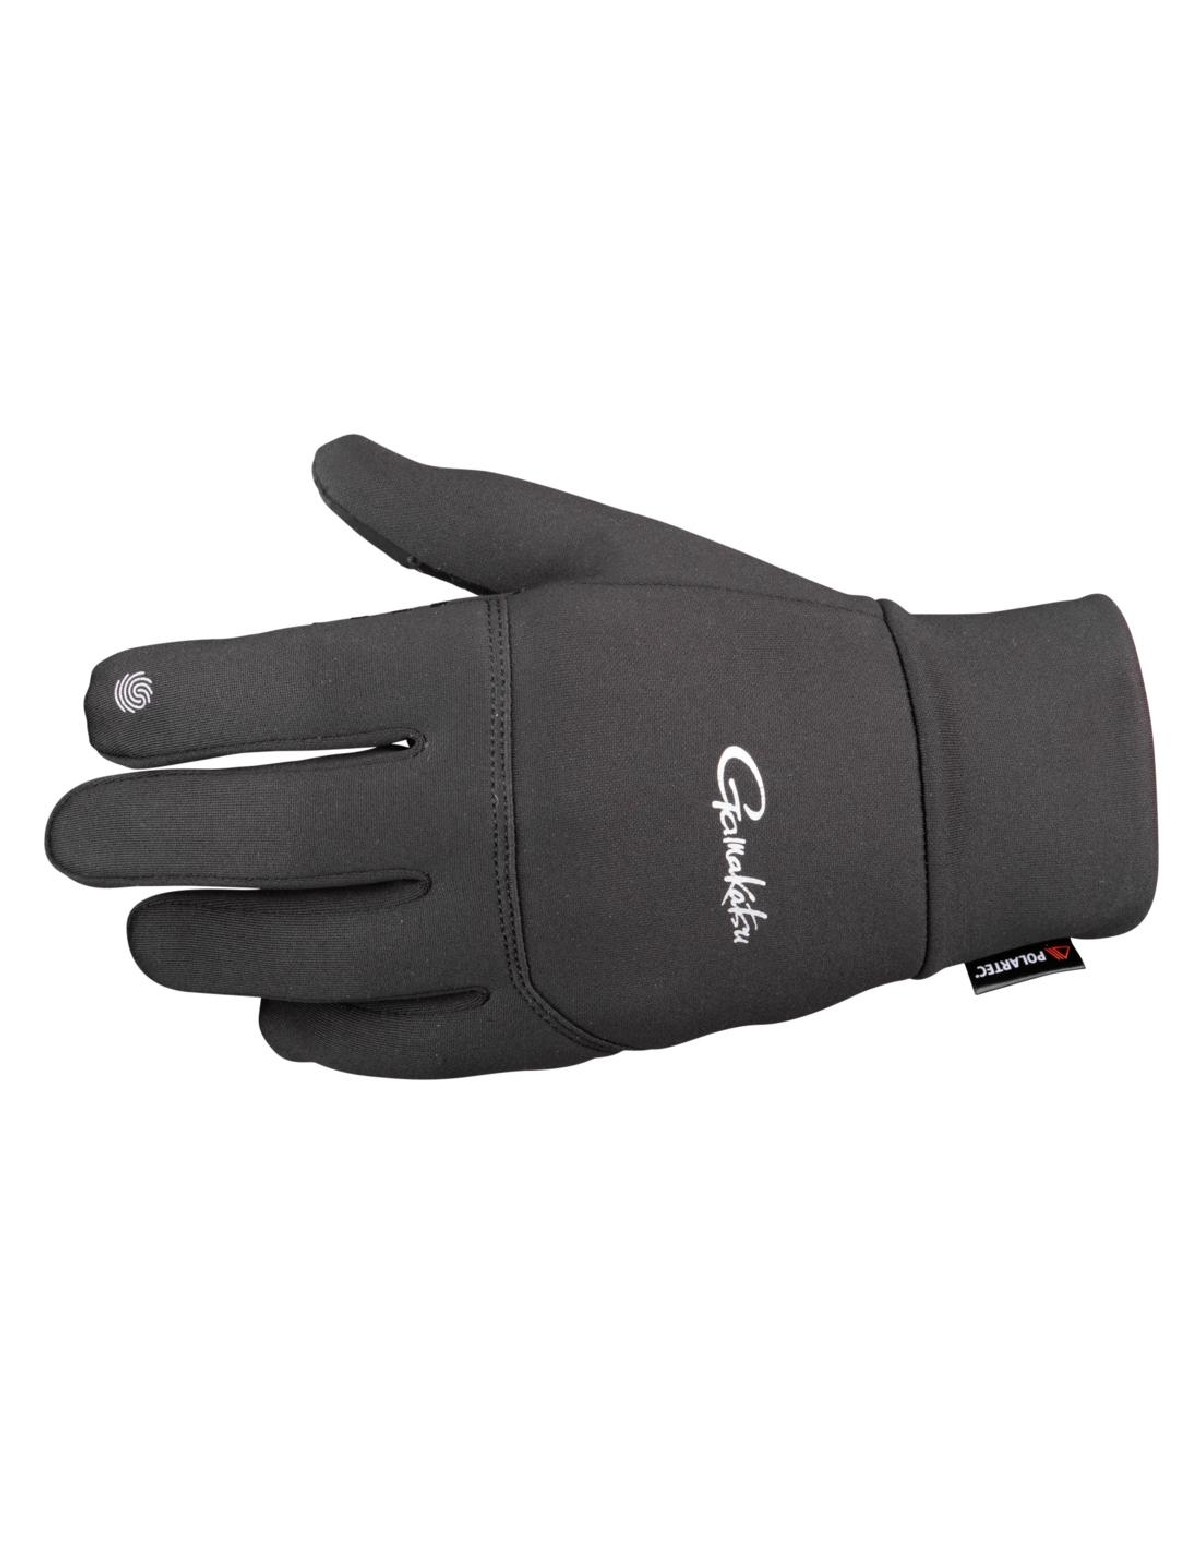 Gamakatsu G-Power Gloves Medium